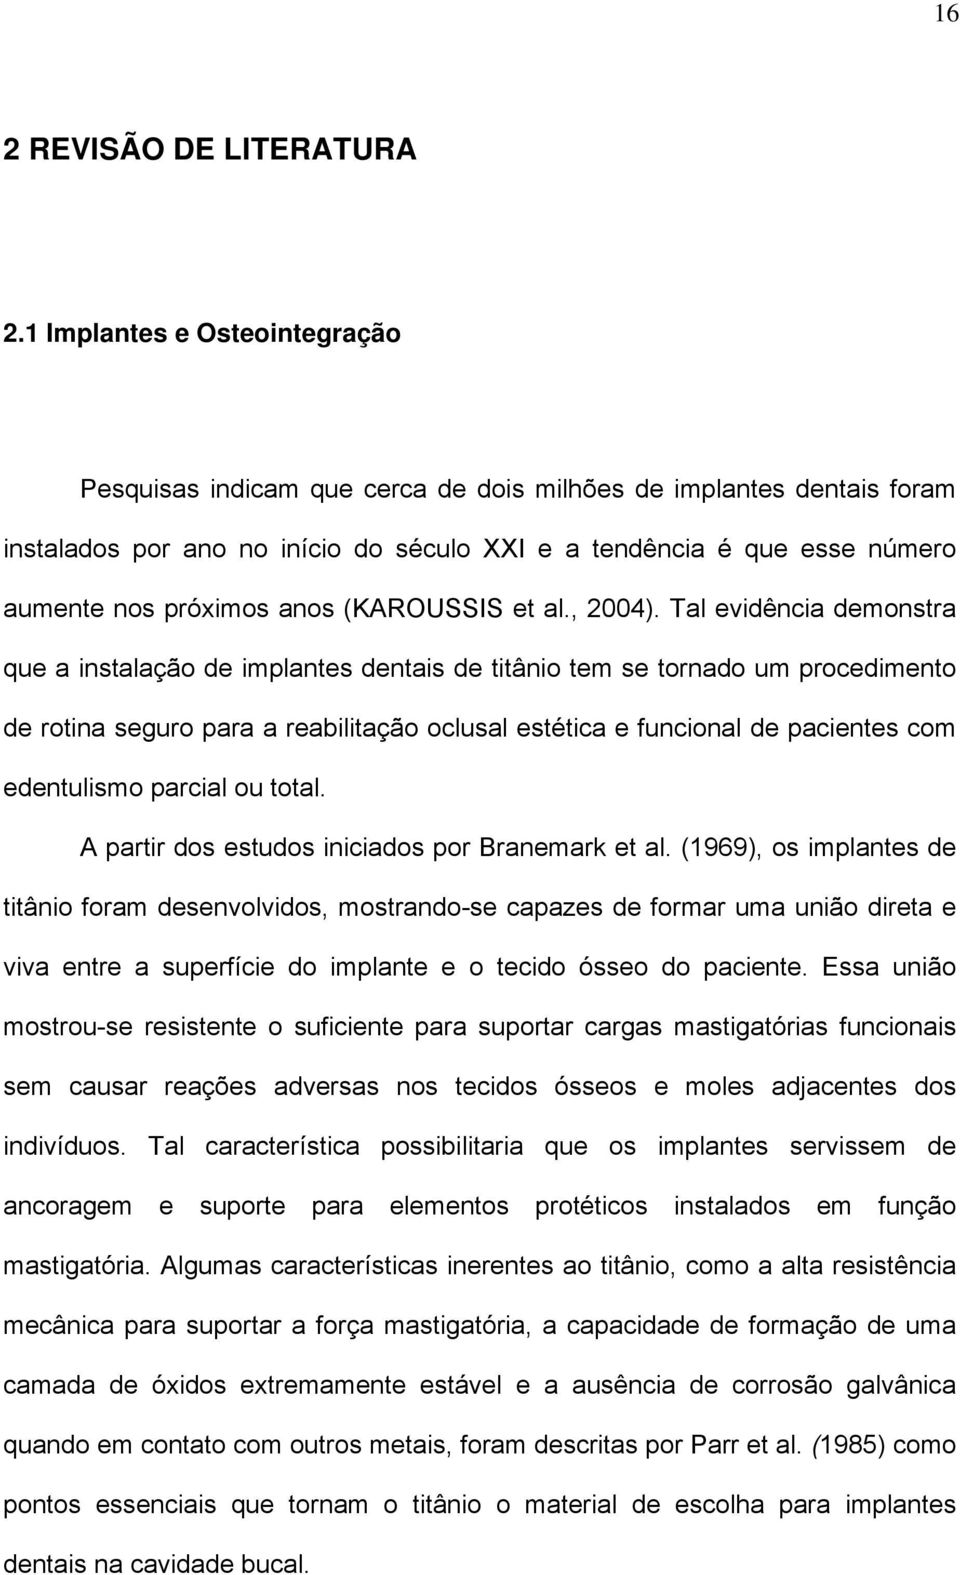 anos (KAROUSSIS et al., 2004).